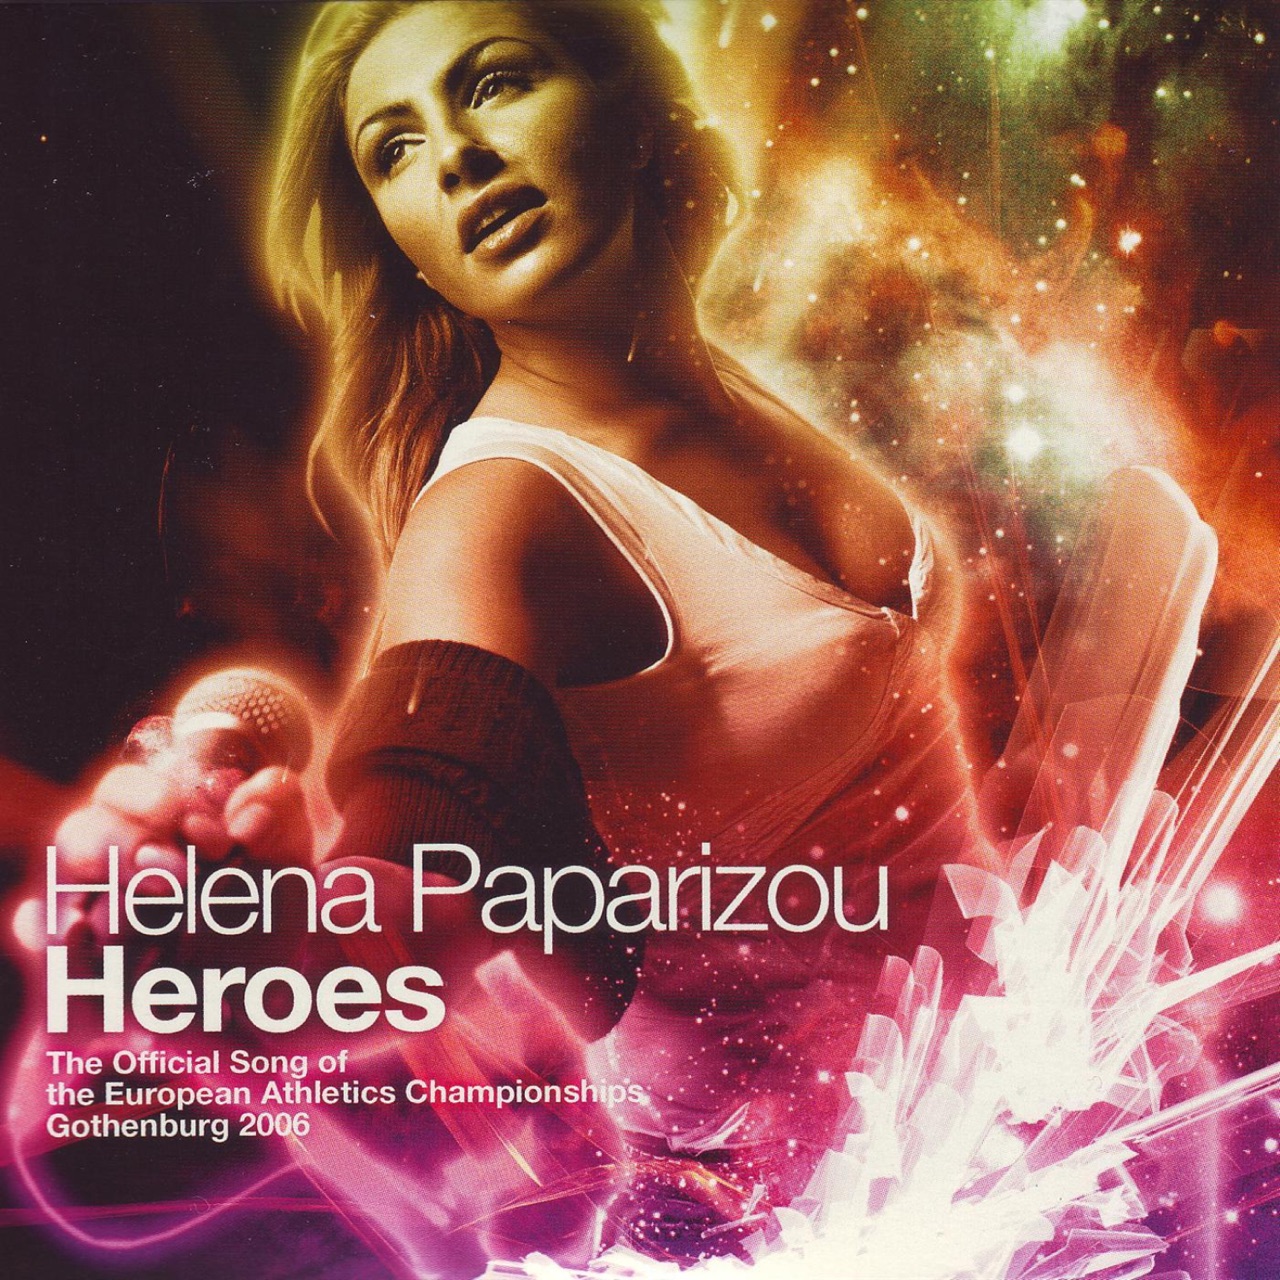 Helena Paparizou — Heroes cover artwork